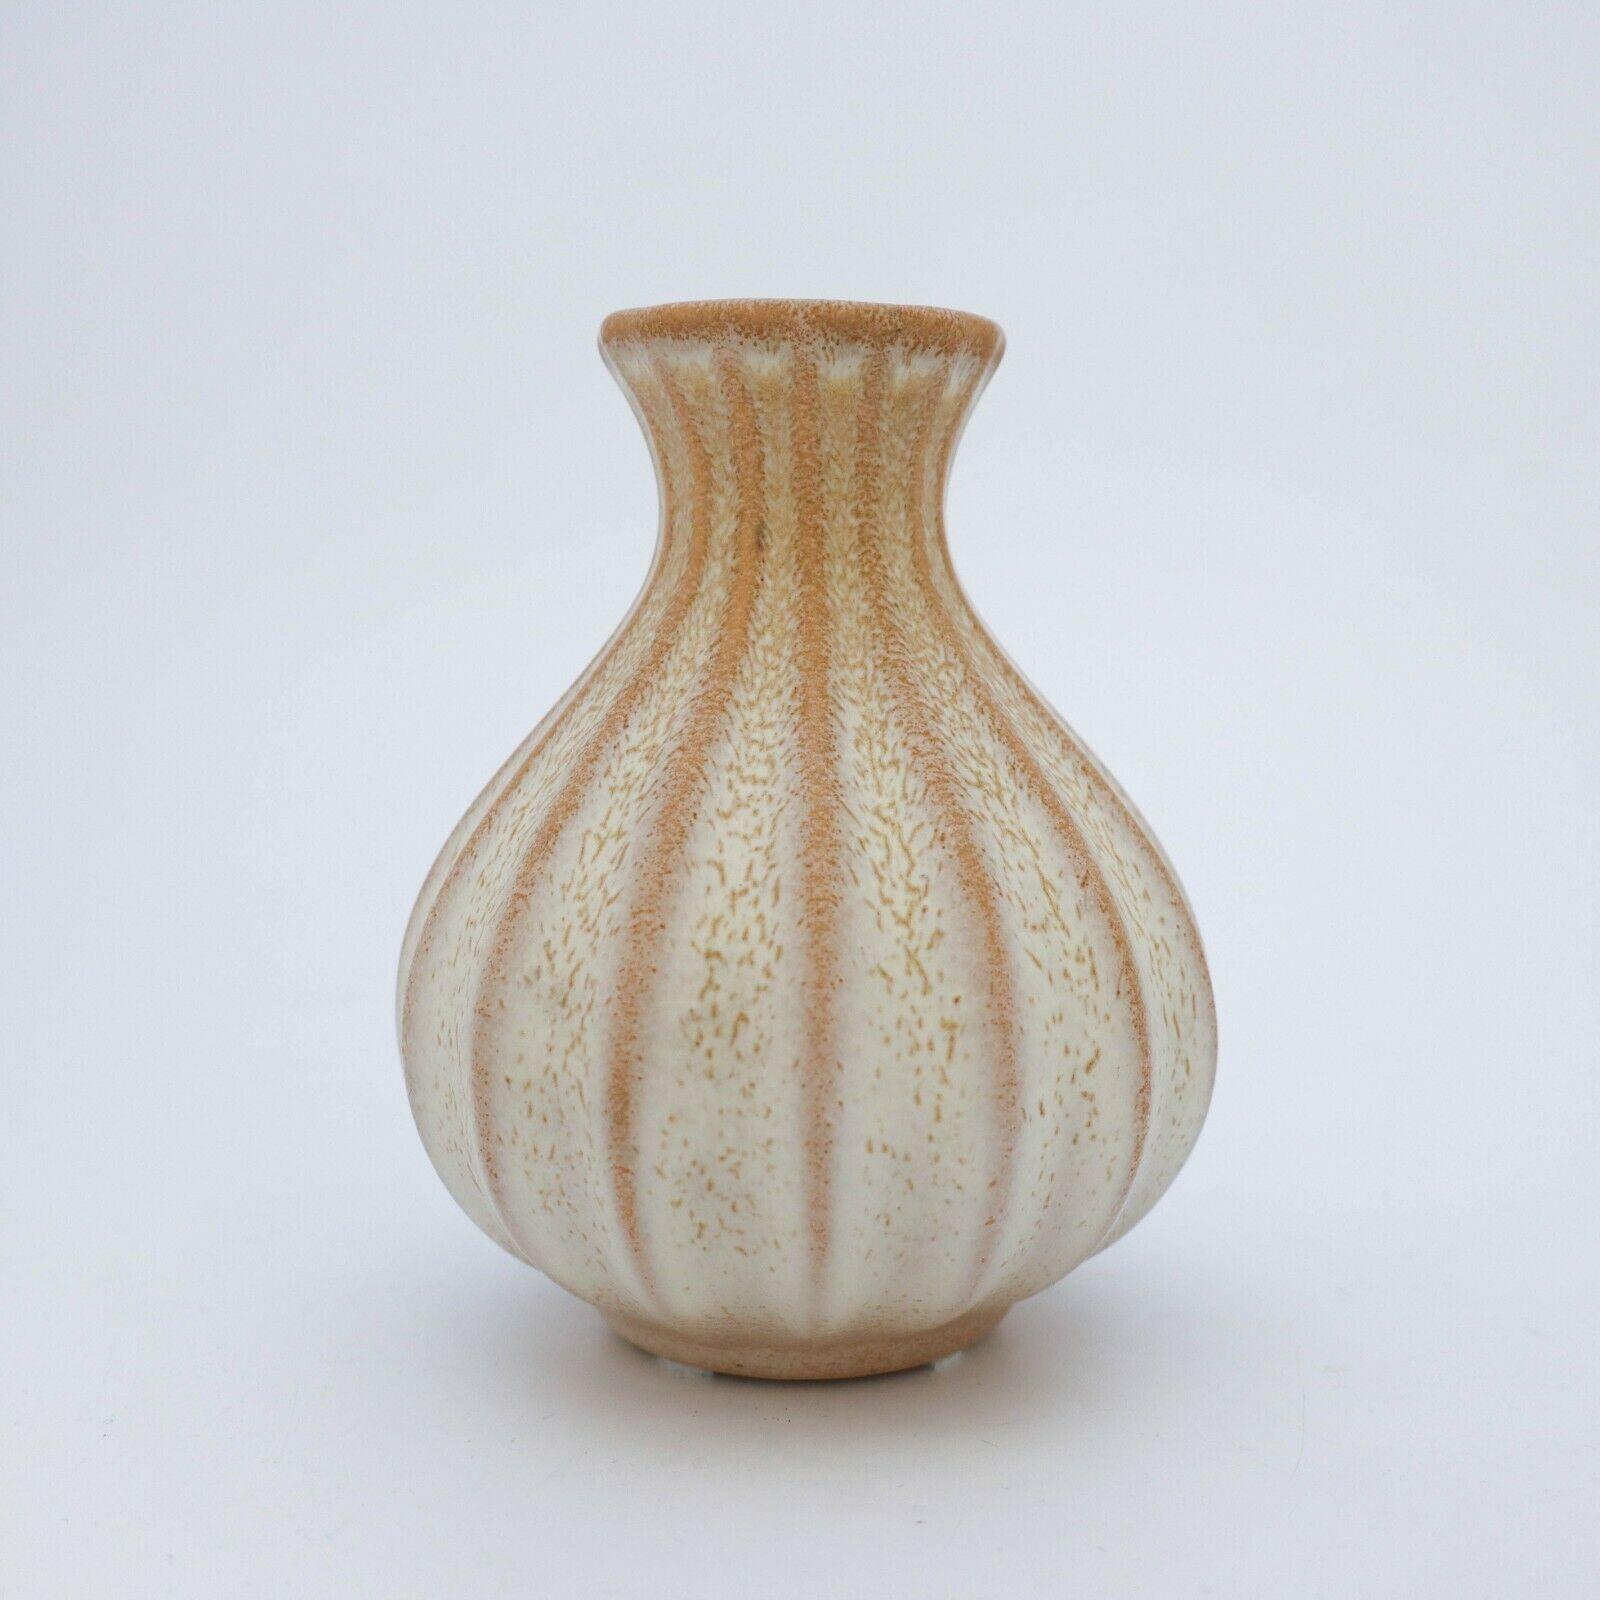 Un beau vase beige conçu par Ewald Dahlskog chez Bo Fajans à Gefle dans les années 1930. Le vase a une hauteur de 15,5 cm. et il est en très bon état.